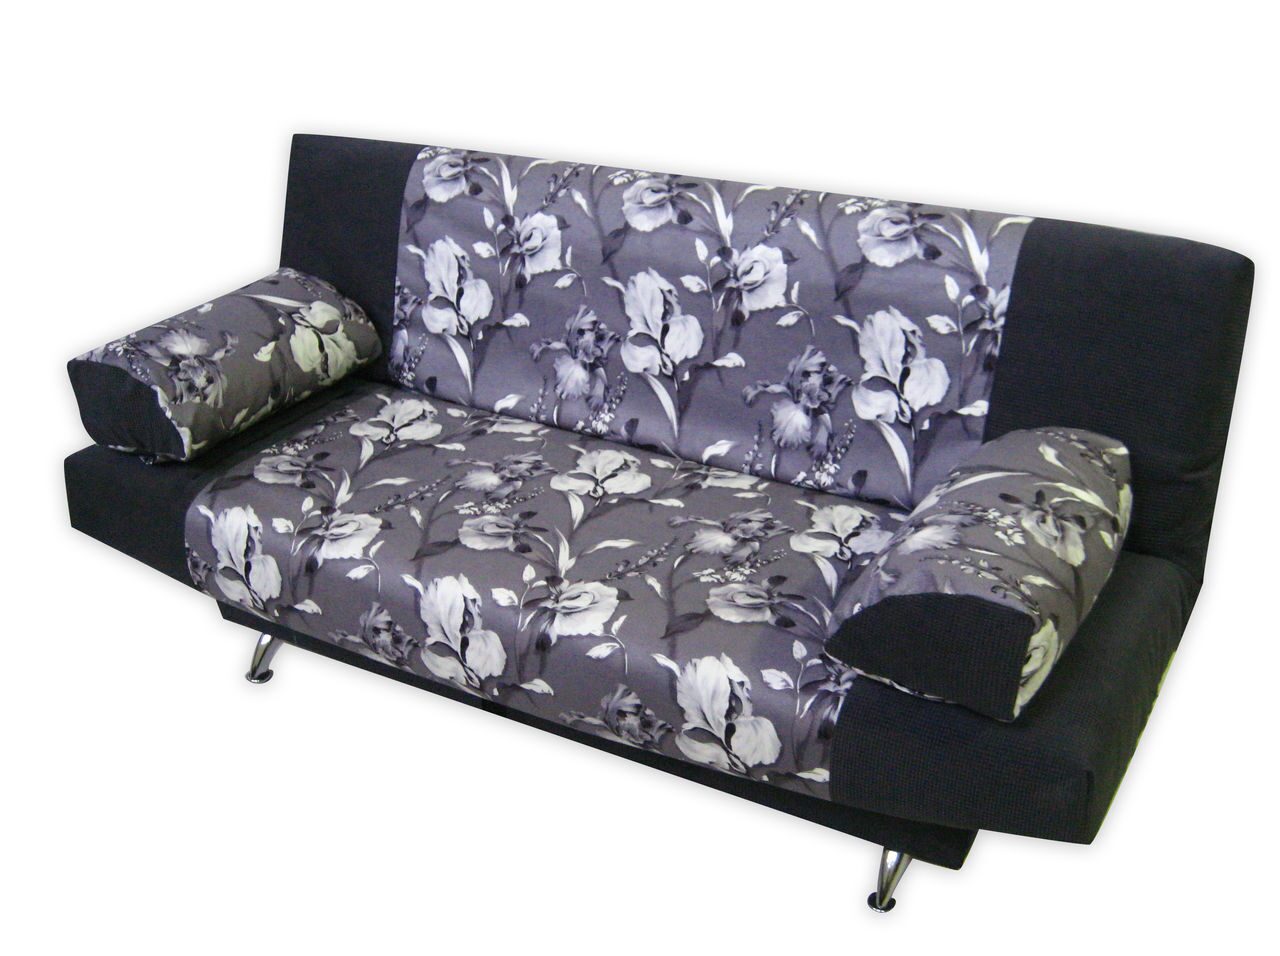 Нонтон мебель спб диван